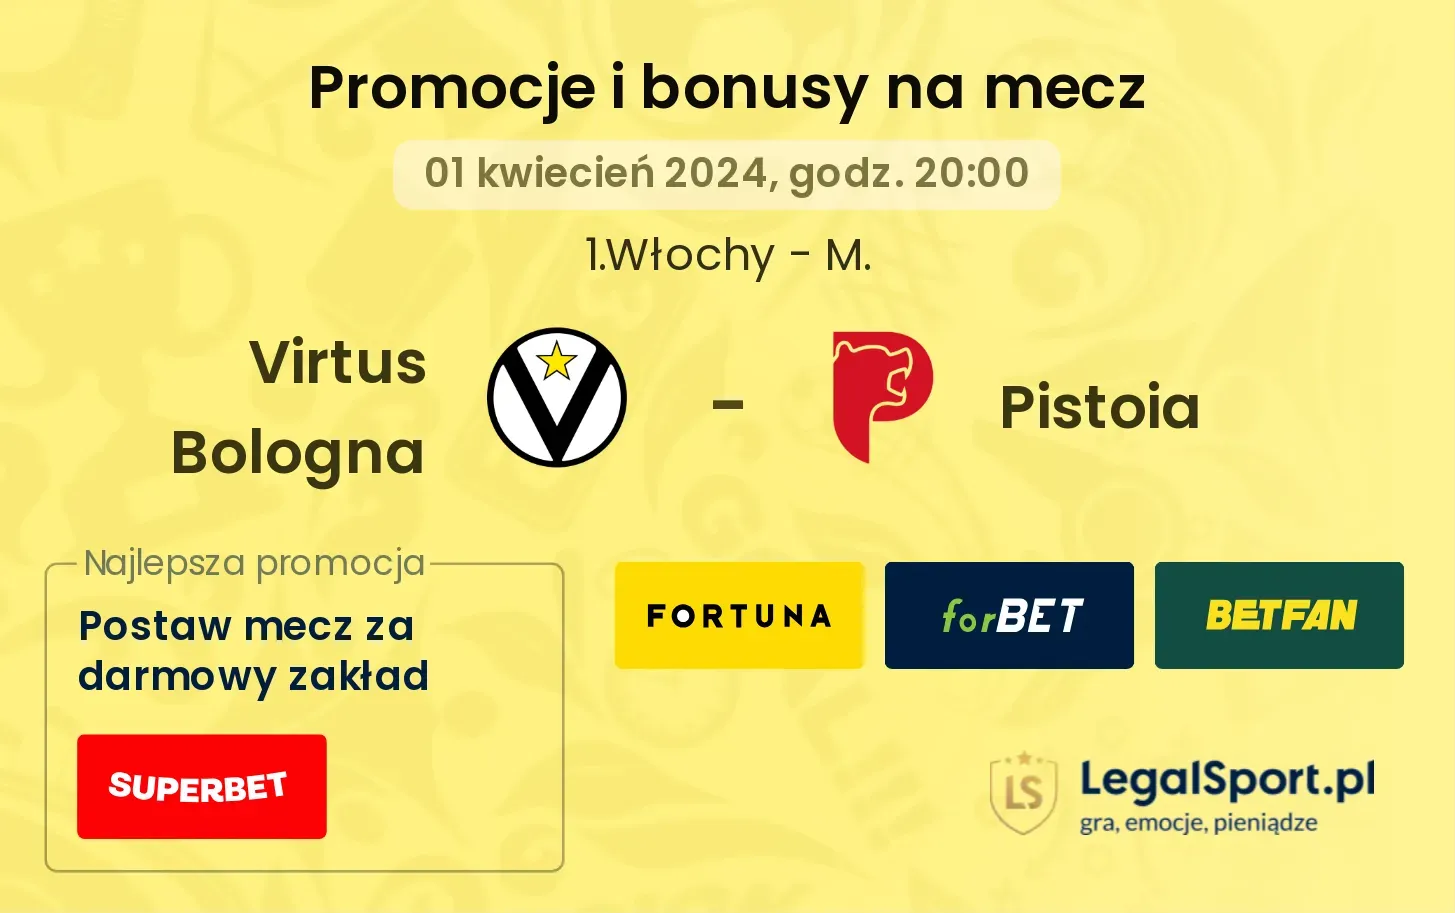 Virtus Bologna - Pistoia promocje bonusy na mecz